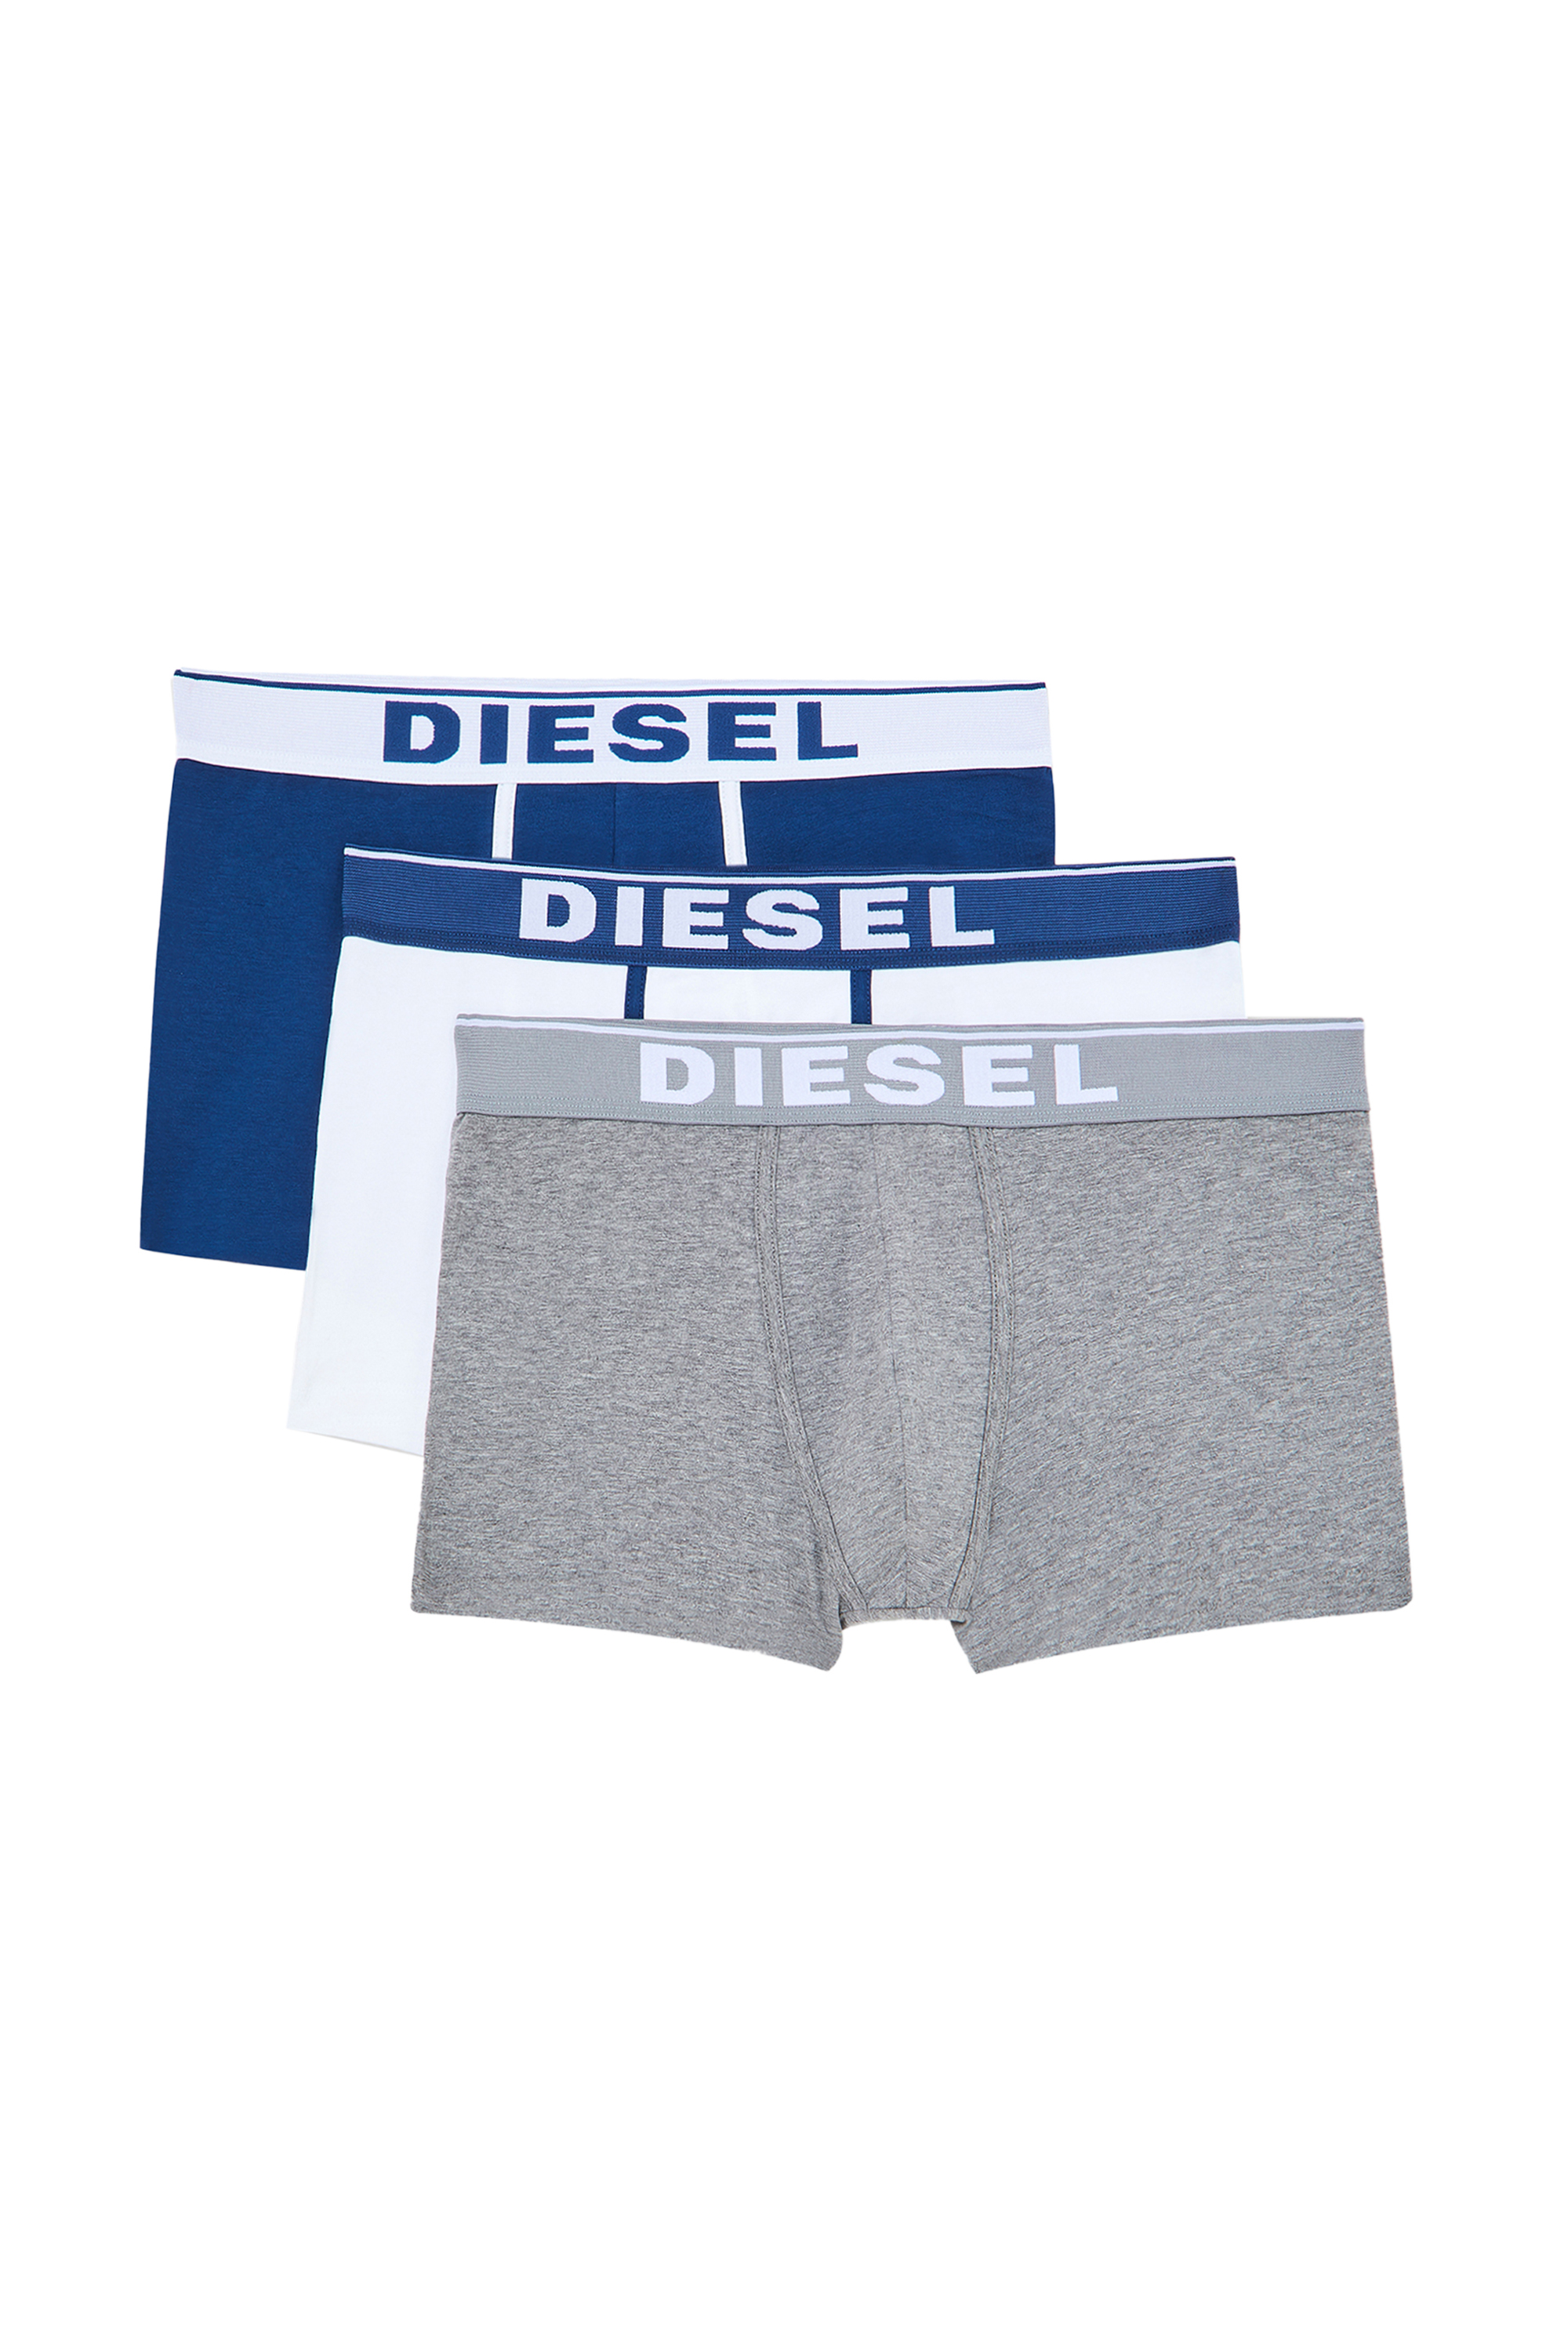 Diesel - UMBX-DAMIENTHREEPACK, Bianco/Blu - Image 3